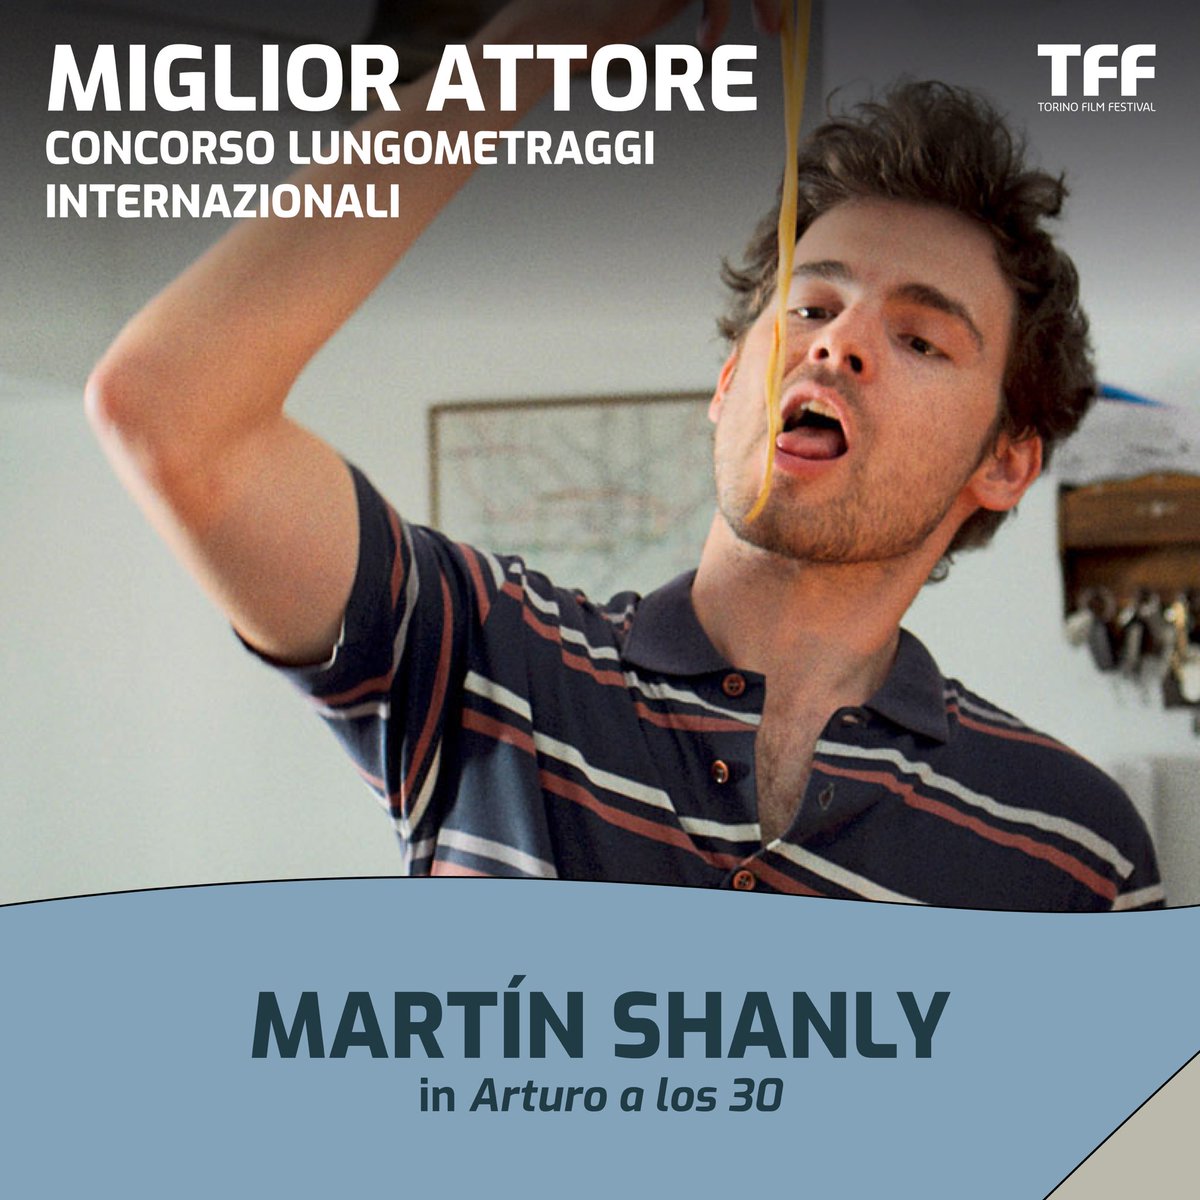 Il Premio come Miglior Attore va a MARTÍN SHANLY in Arturo a Los 30 di Martín Shanly.